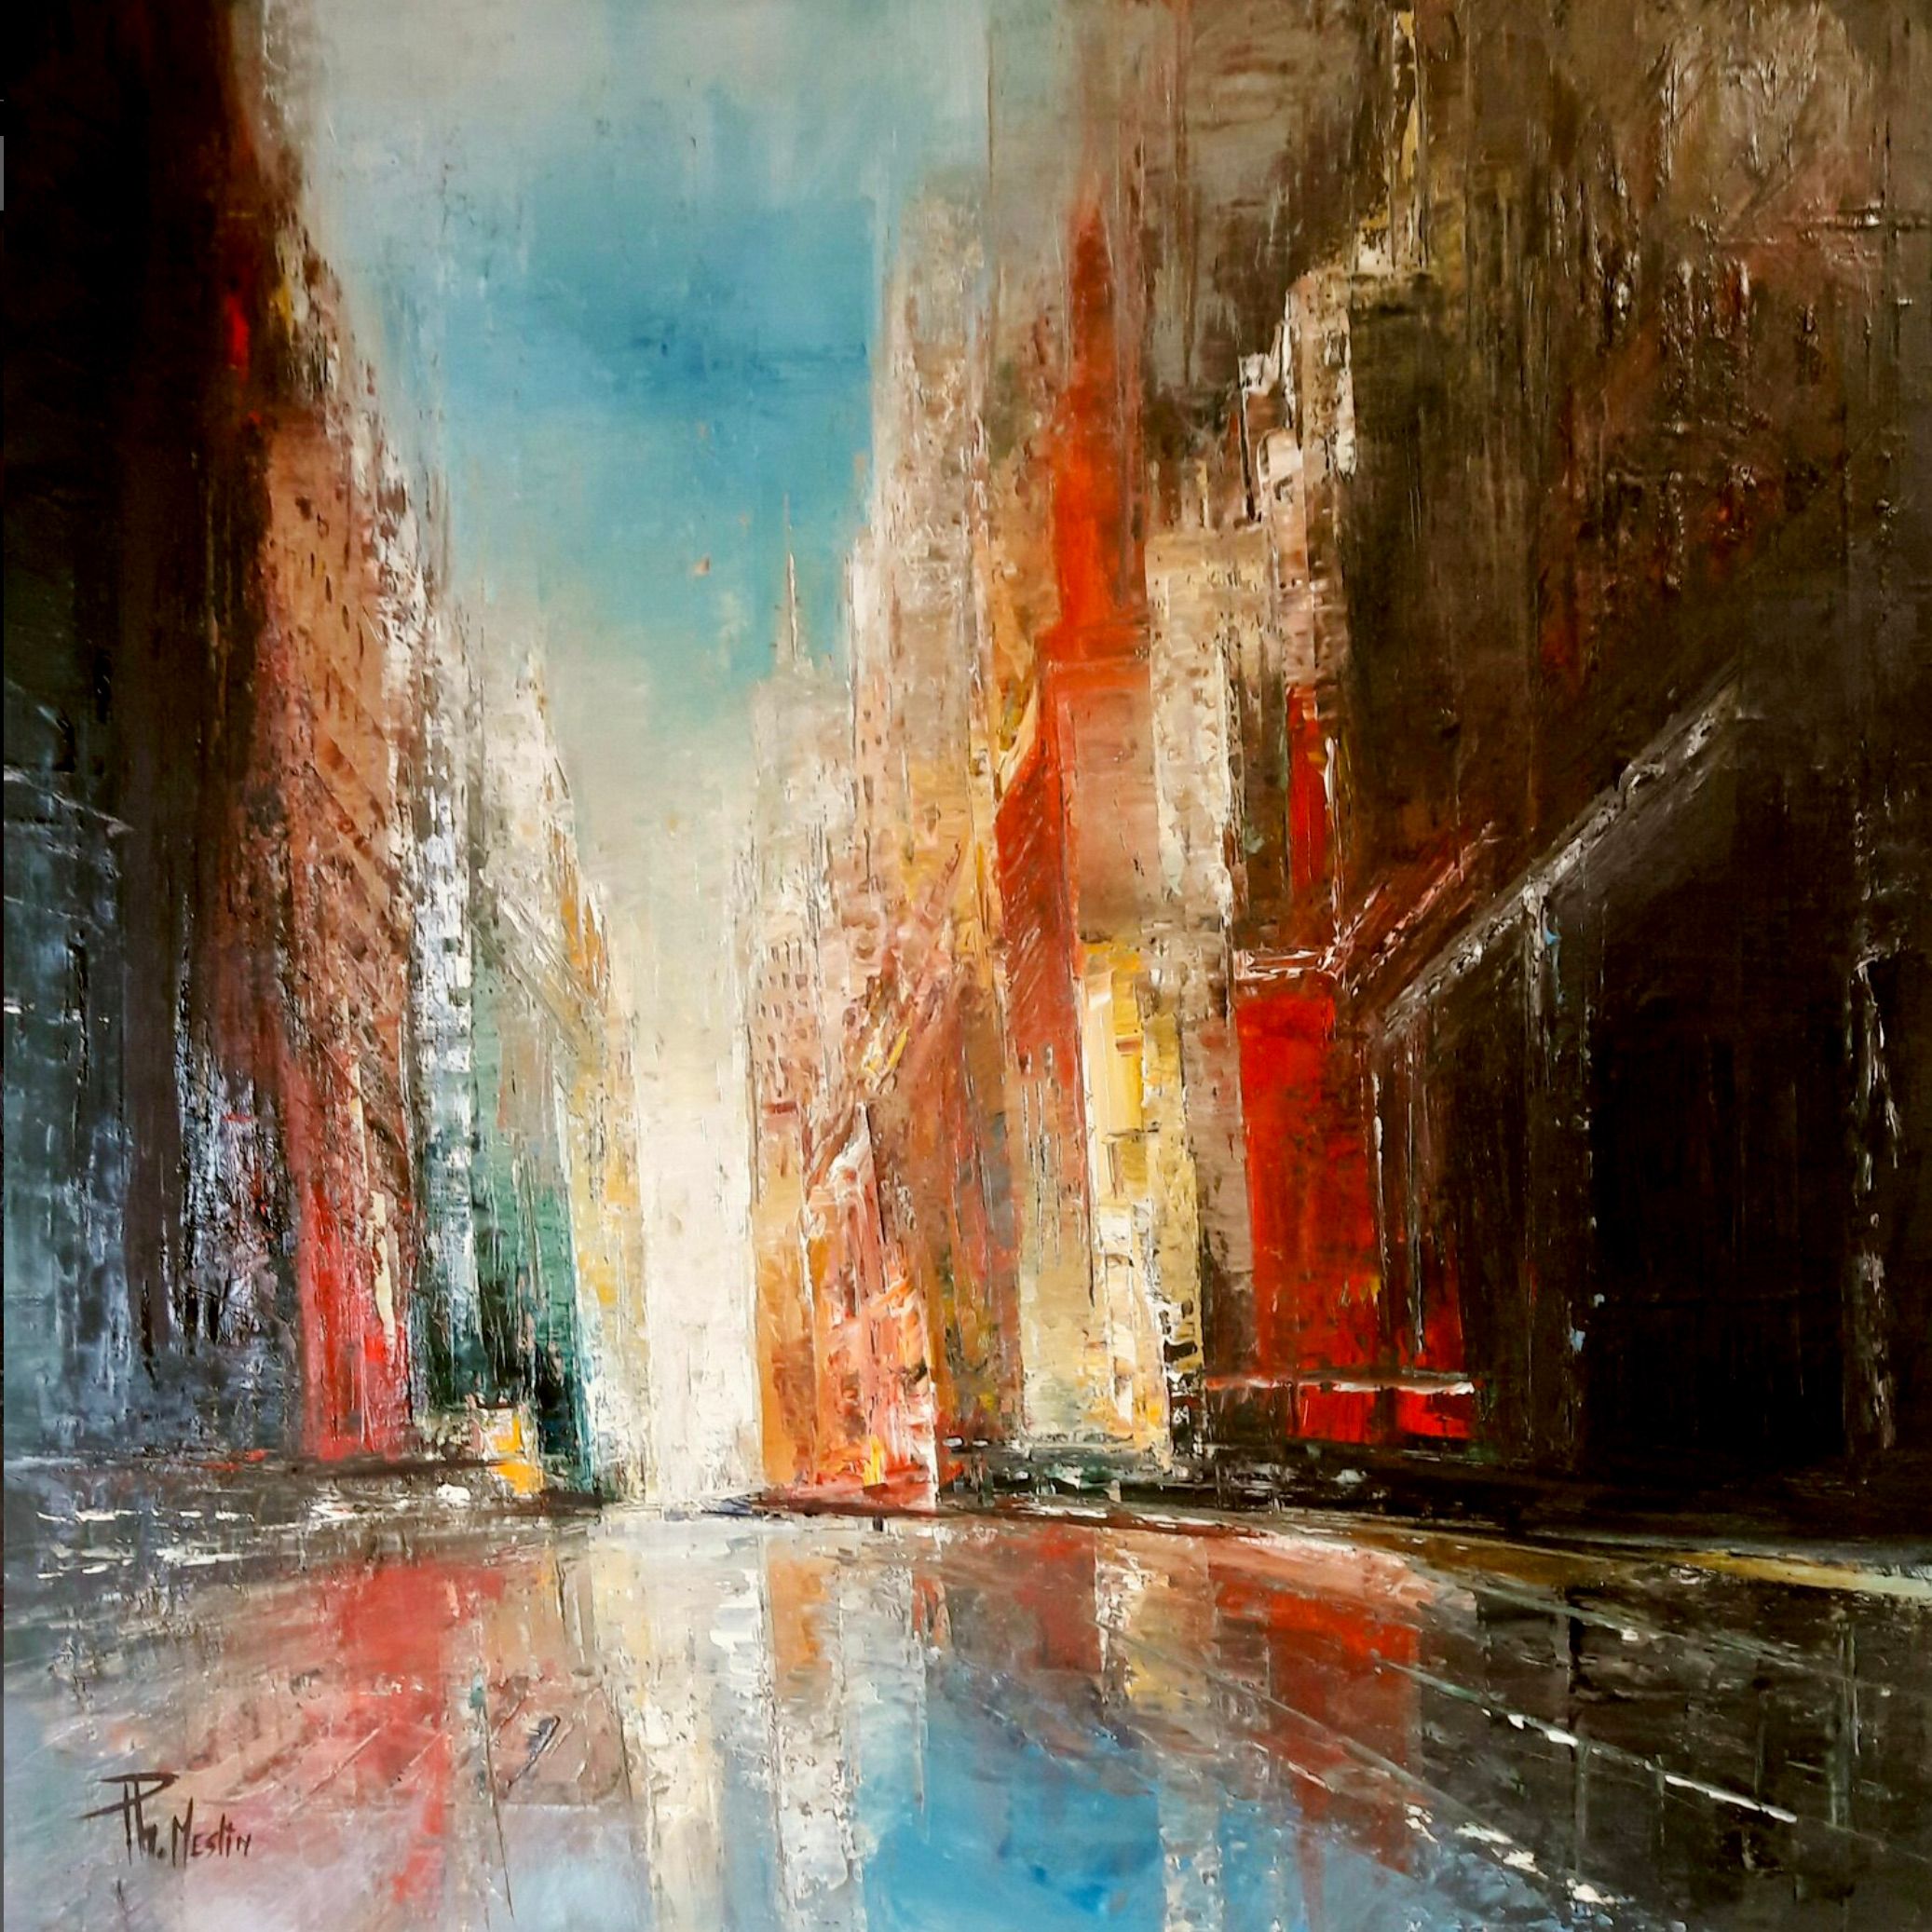 El cuadro "Reflets urbains" de Philippe Meslin, es un óleo coloreado figurativo algo abstracto de una ciudad